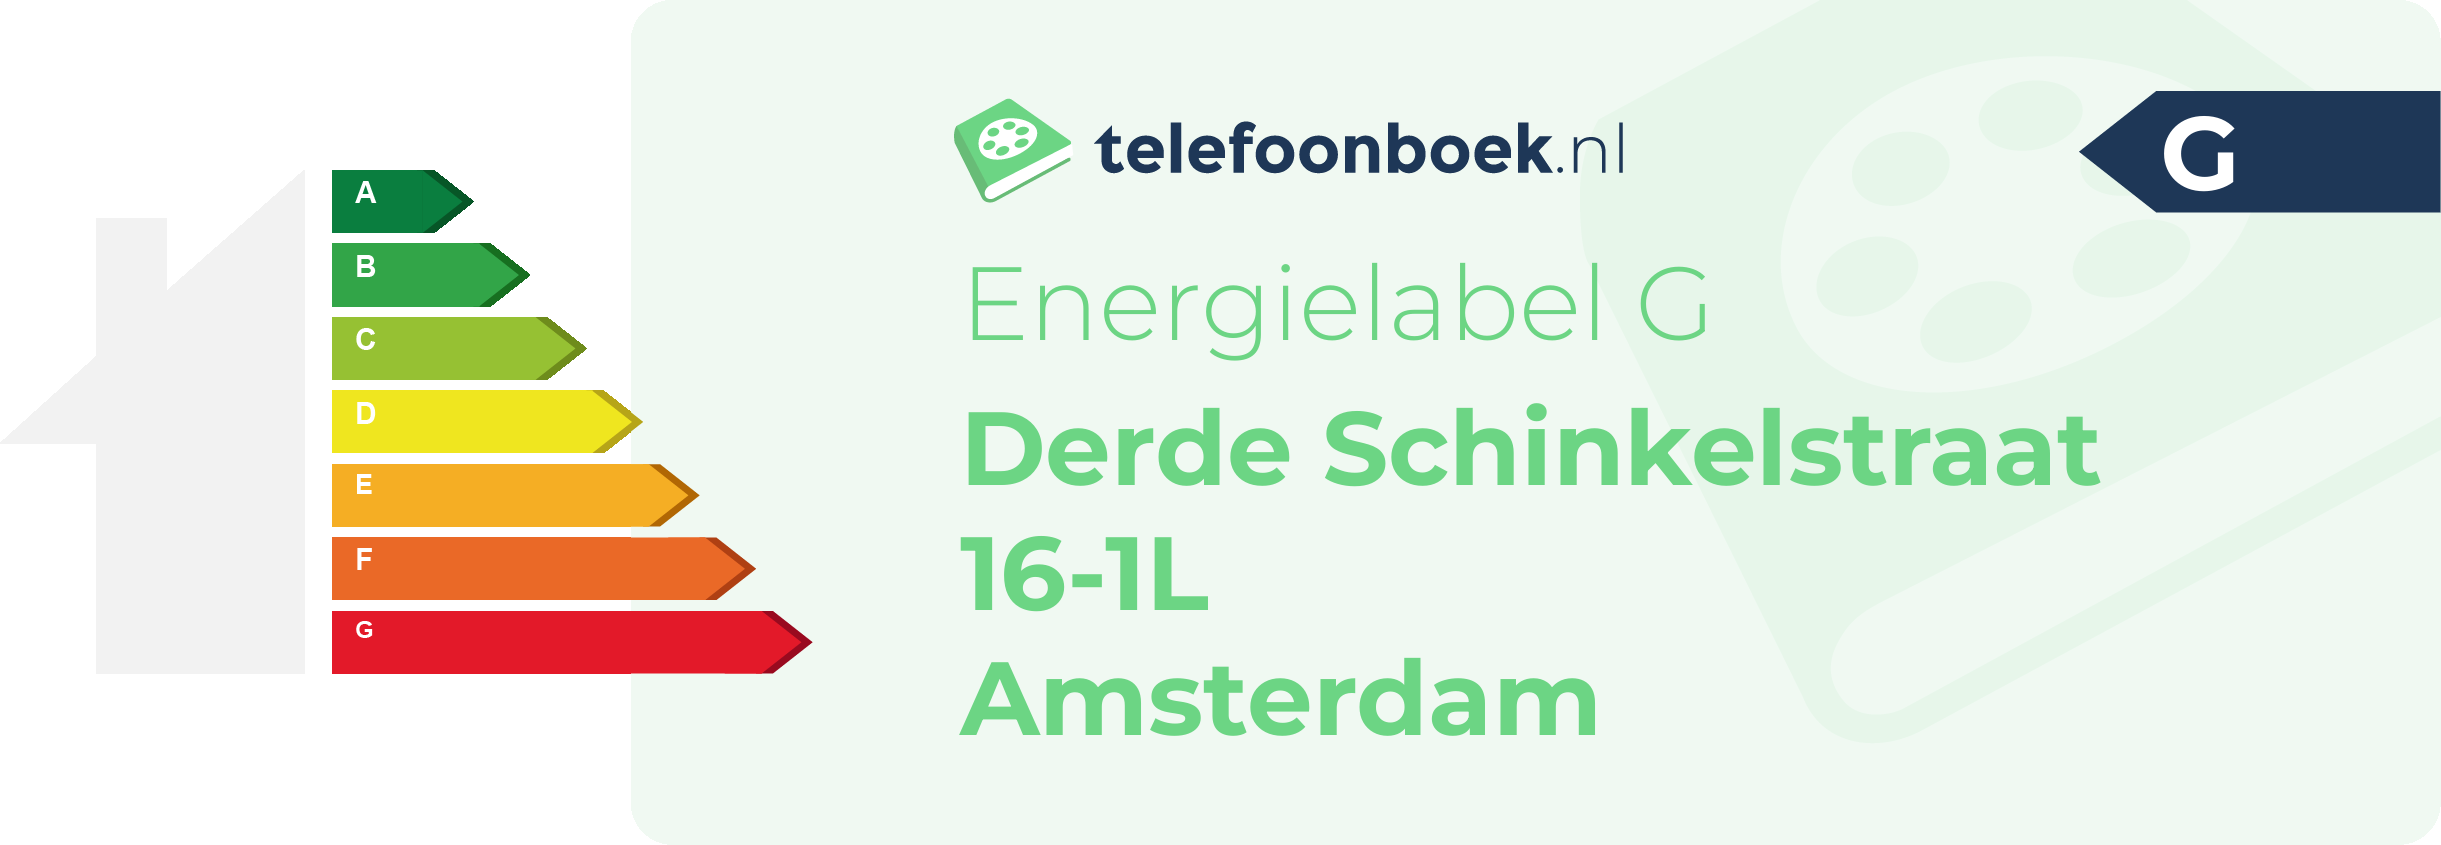 Energielabel Derde Schinkelstraat 16-1L Amsterdam